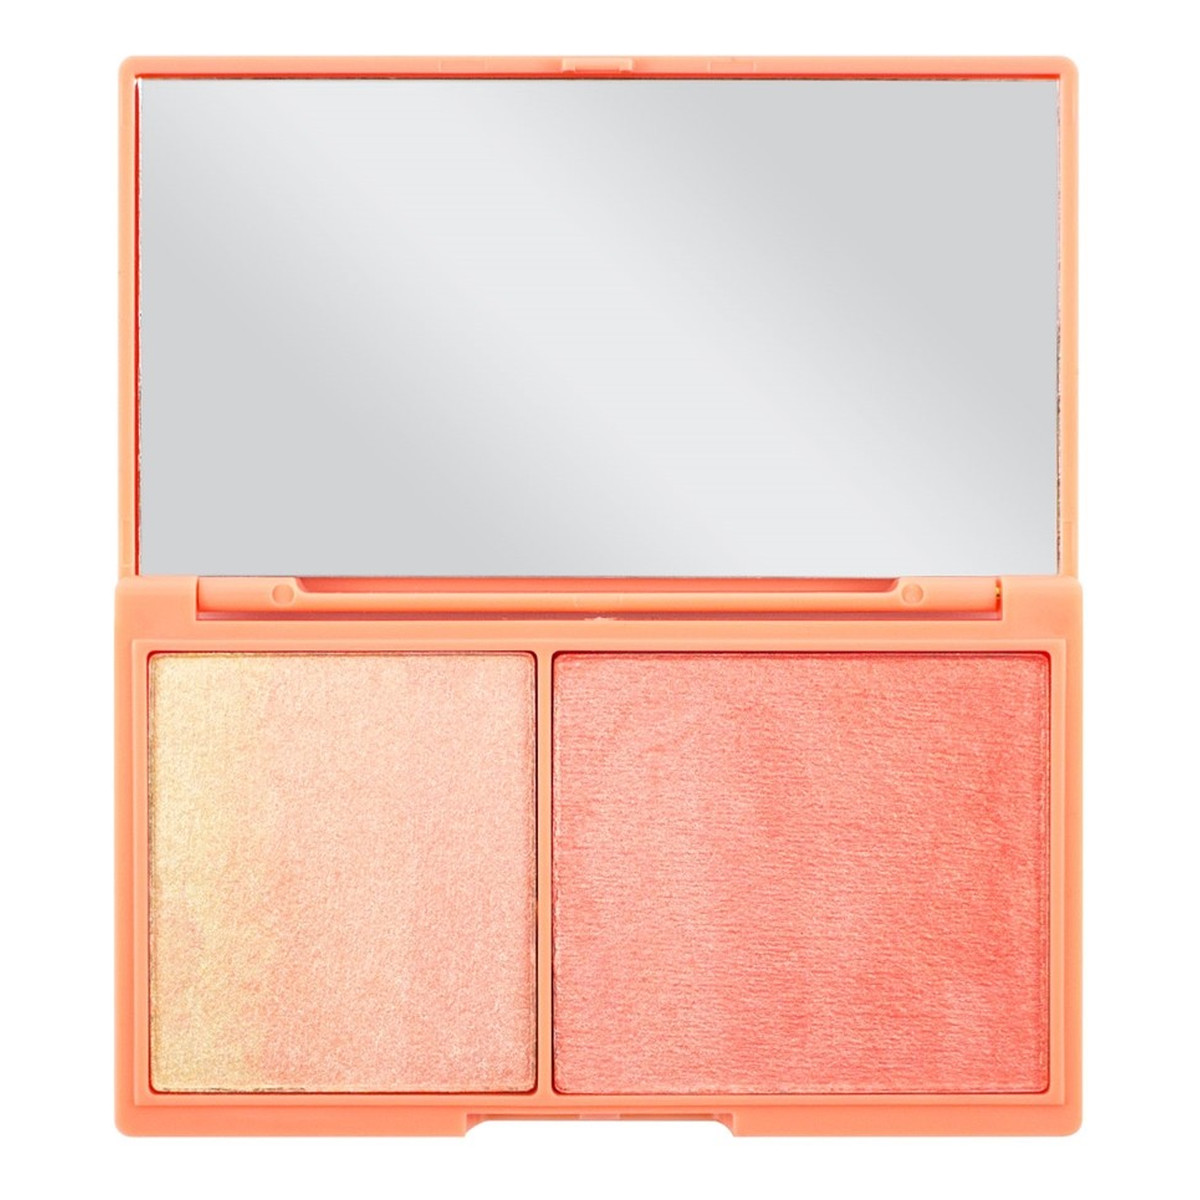 Makeup Revolution I Heart Chocolate Peach & Glow paletka do konturowania twarzy 11g